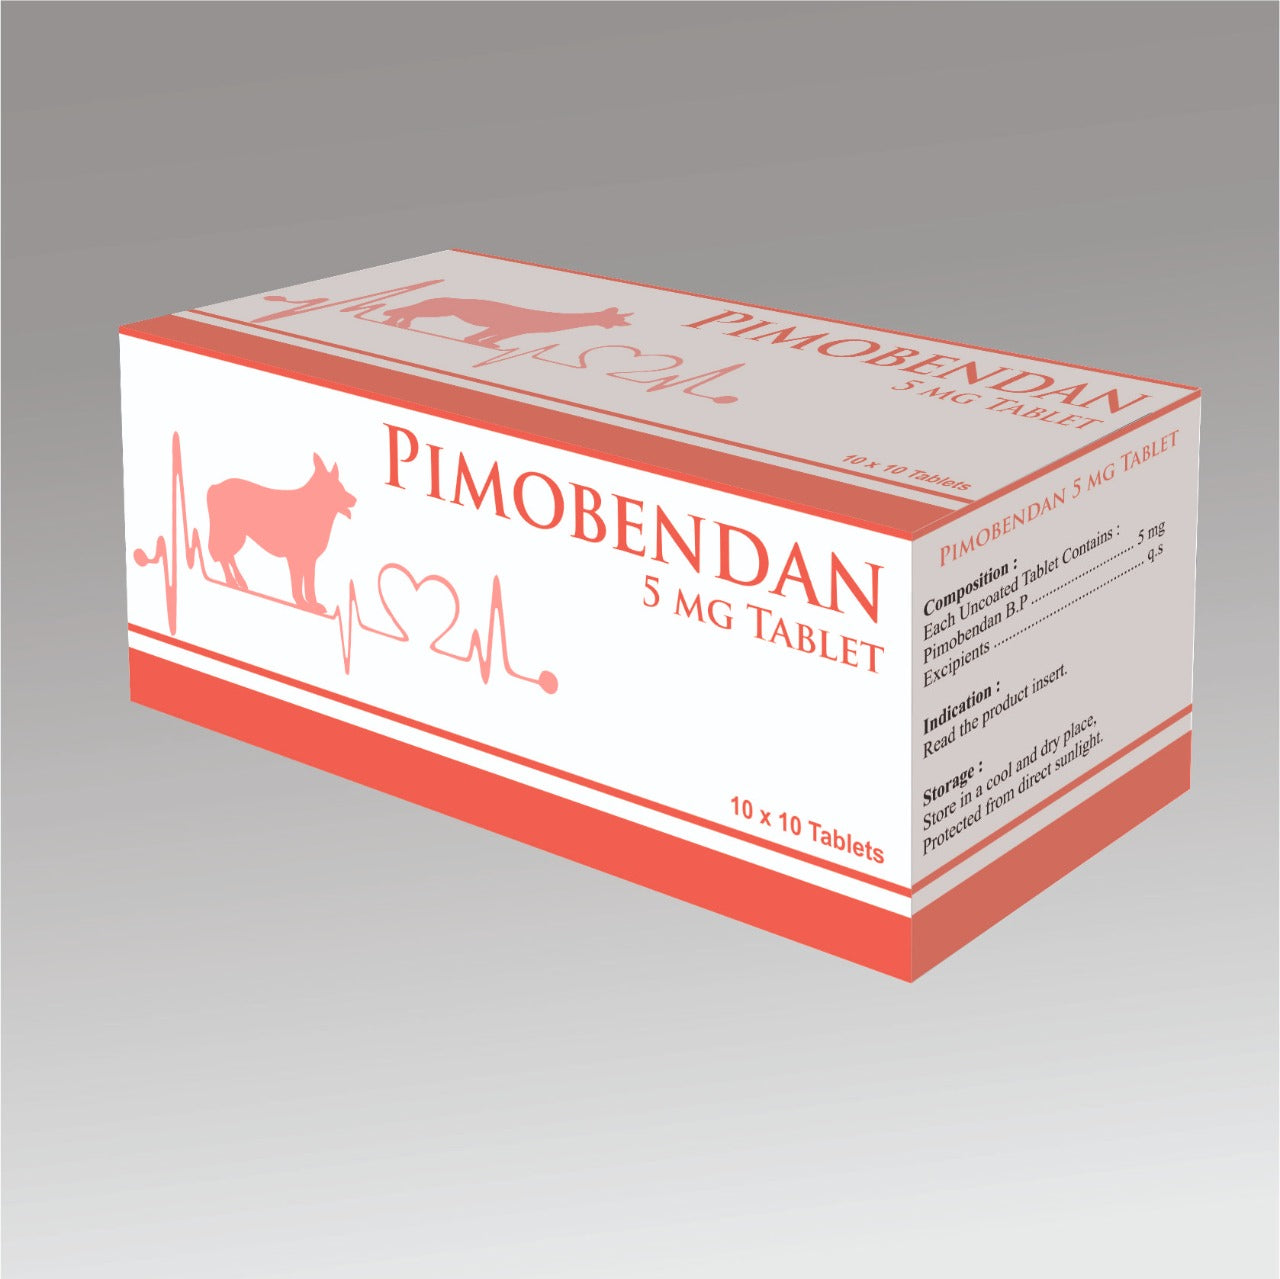 Pimobendan Chewable Tablets (1.25mg, 5 mg)